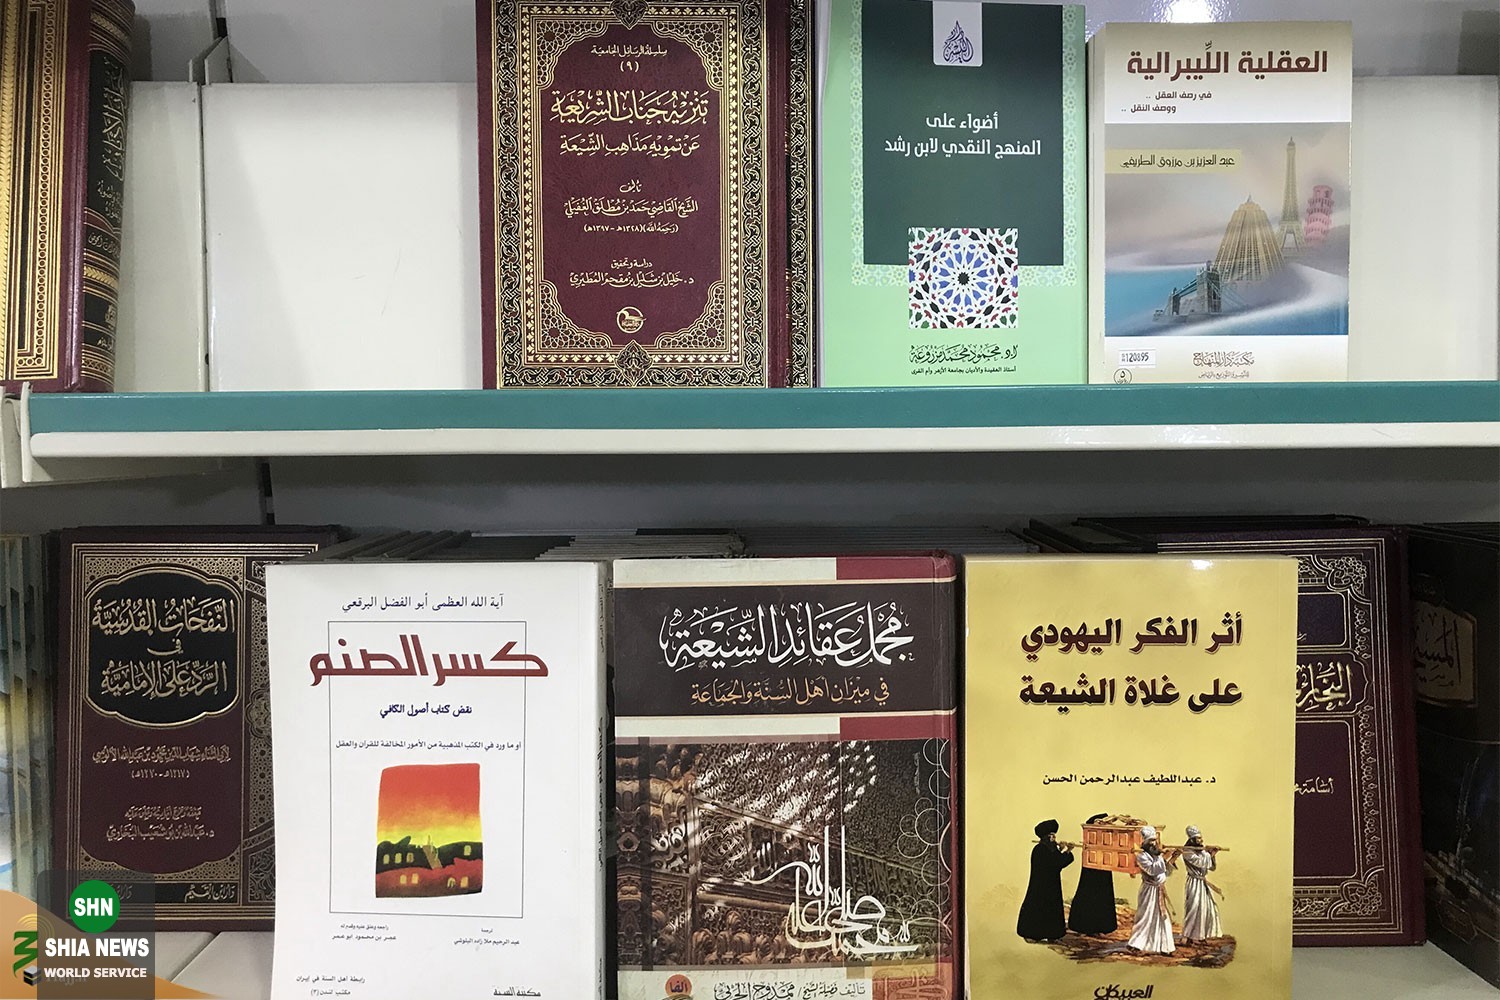 کتابفروشی های عربستان محلی برای نشر کتابهایی علیه ایران و مذهب تشیع